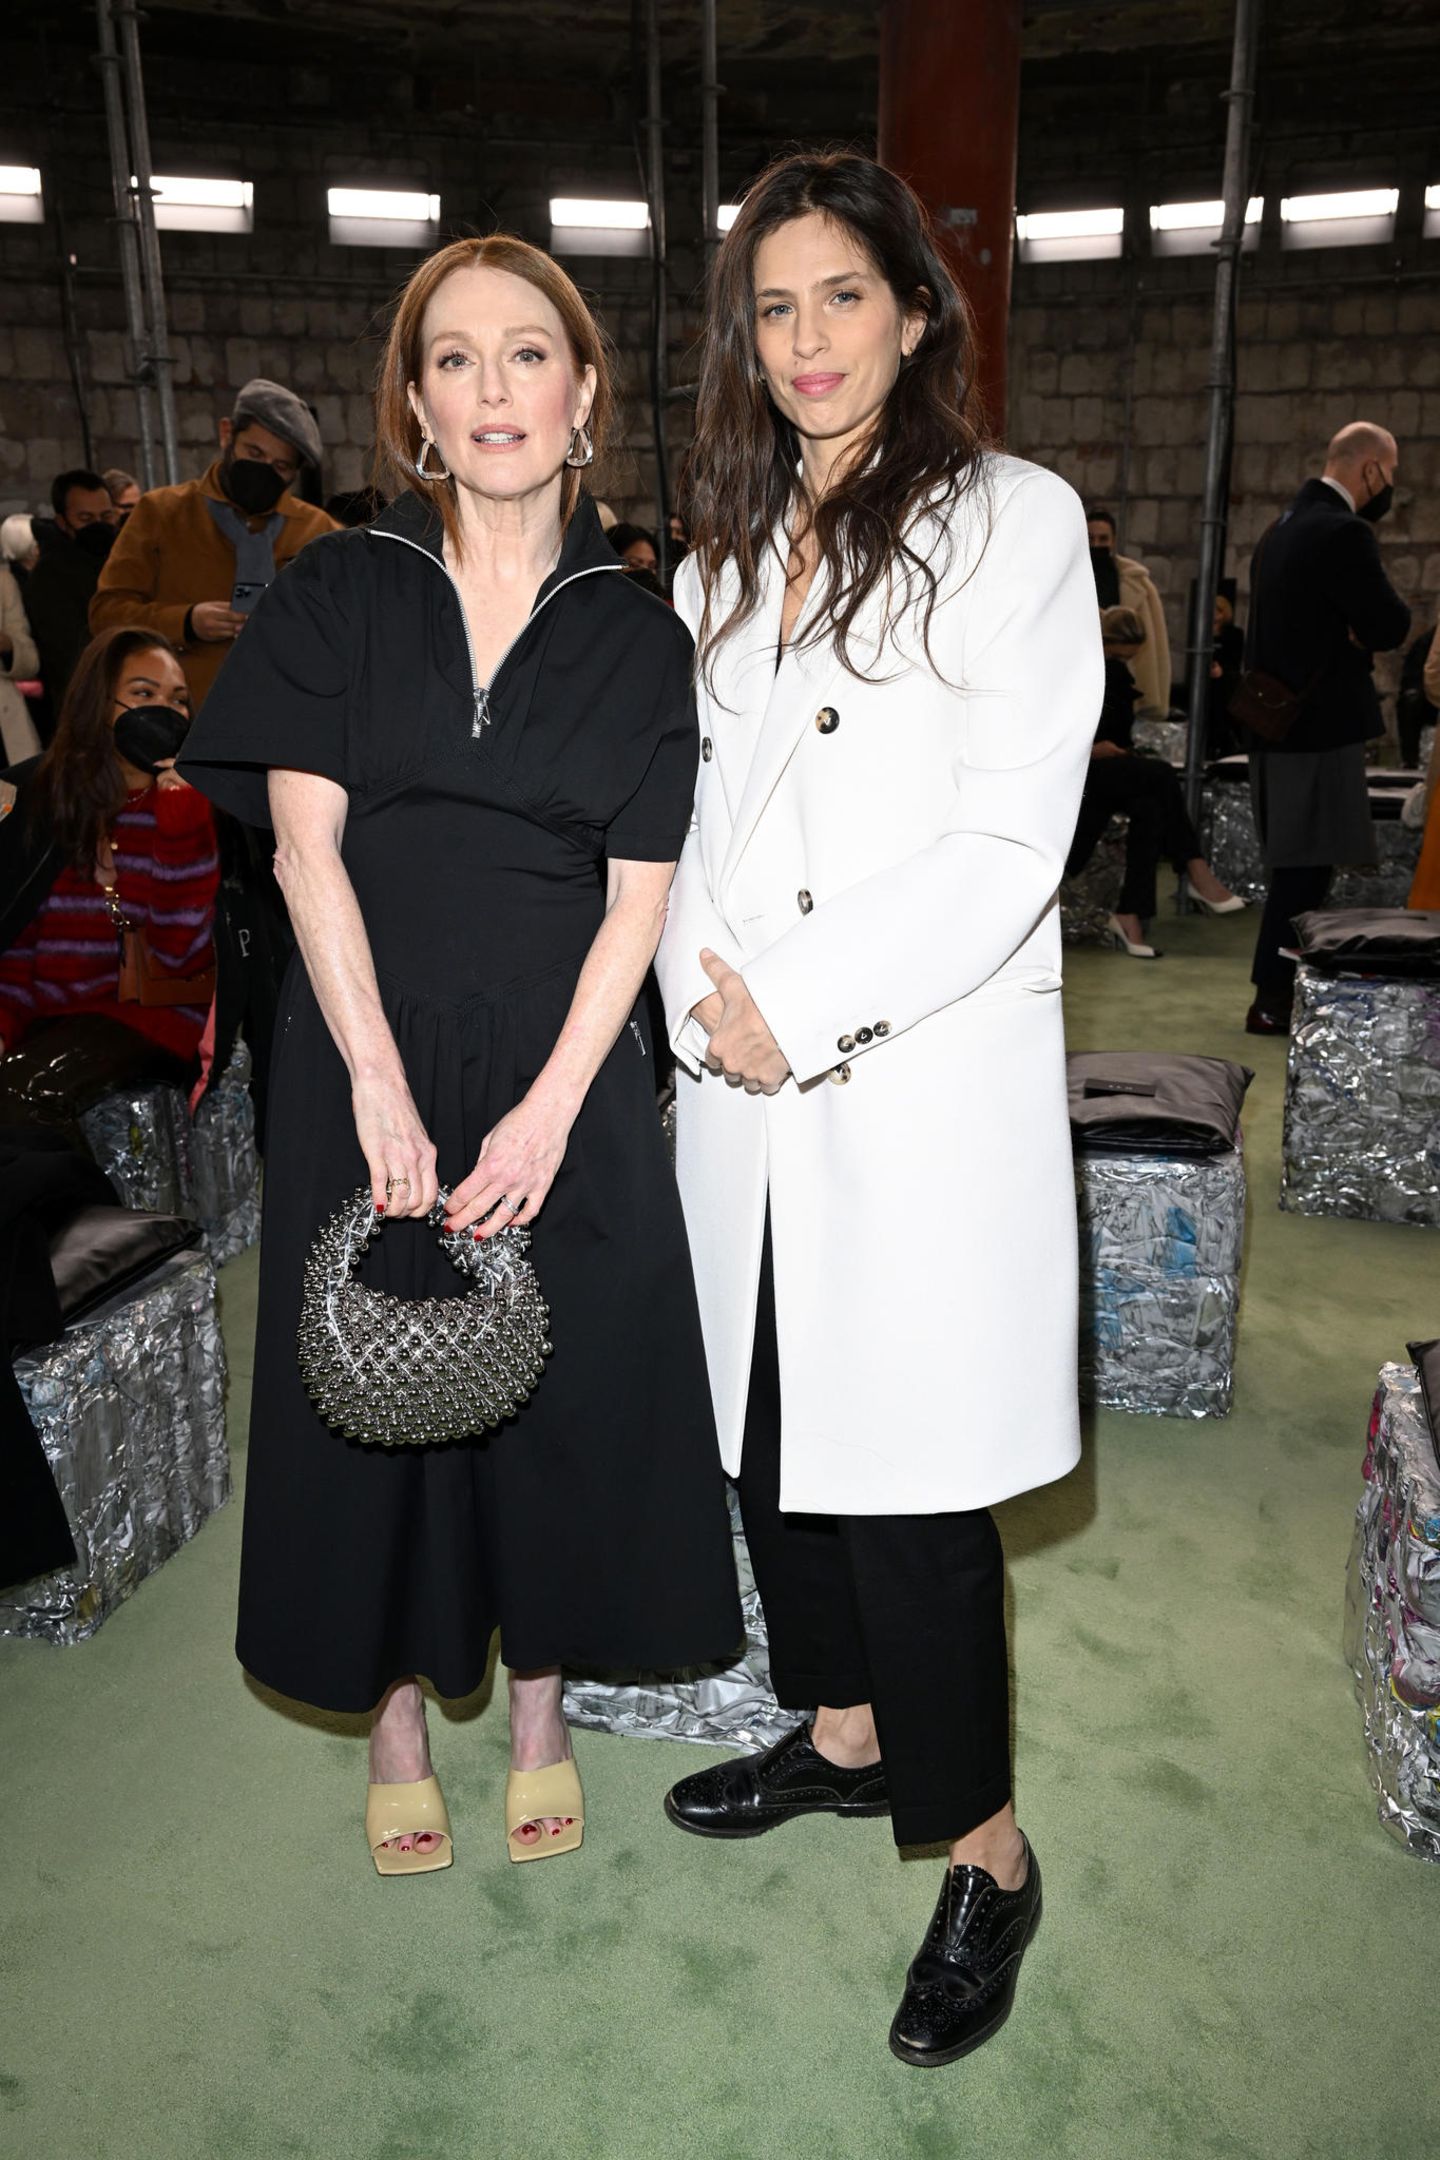 Julianne Moore und Maïwenn Le Besco sind wie Schneeweißchen und Rosenrot bei der Show von Bottega Veneta. Das Kleid der Hollywood-Schauspielerin mag zwar dezent sein, Juliannes Nietentasche hingegen ist umso auffälliger – ein gelungener Stilbruch. 